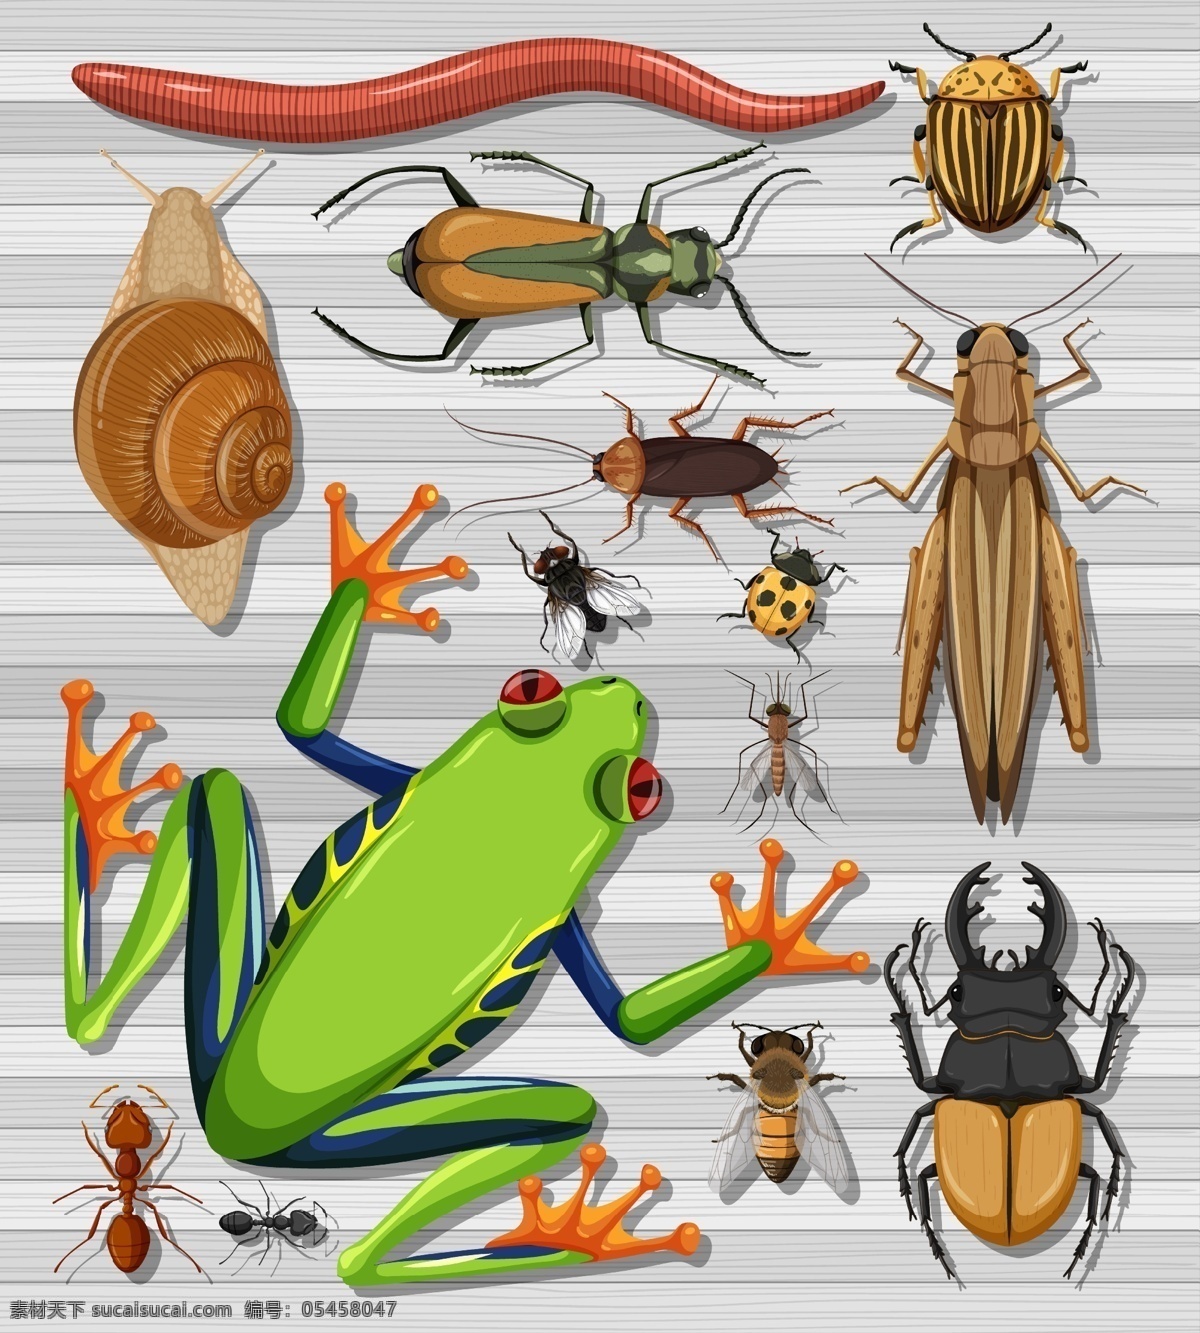 卡通昆虫图片 卡通昆虫 昆虫 蚂蚁 恐龙 螳螂 蚂蚱 甲壳虫 矢量 合集 彩色 卡通动物生物 生物世界